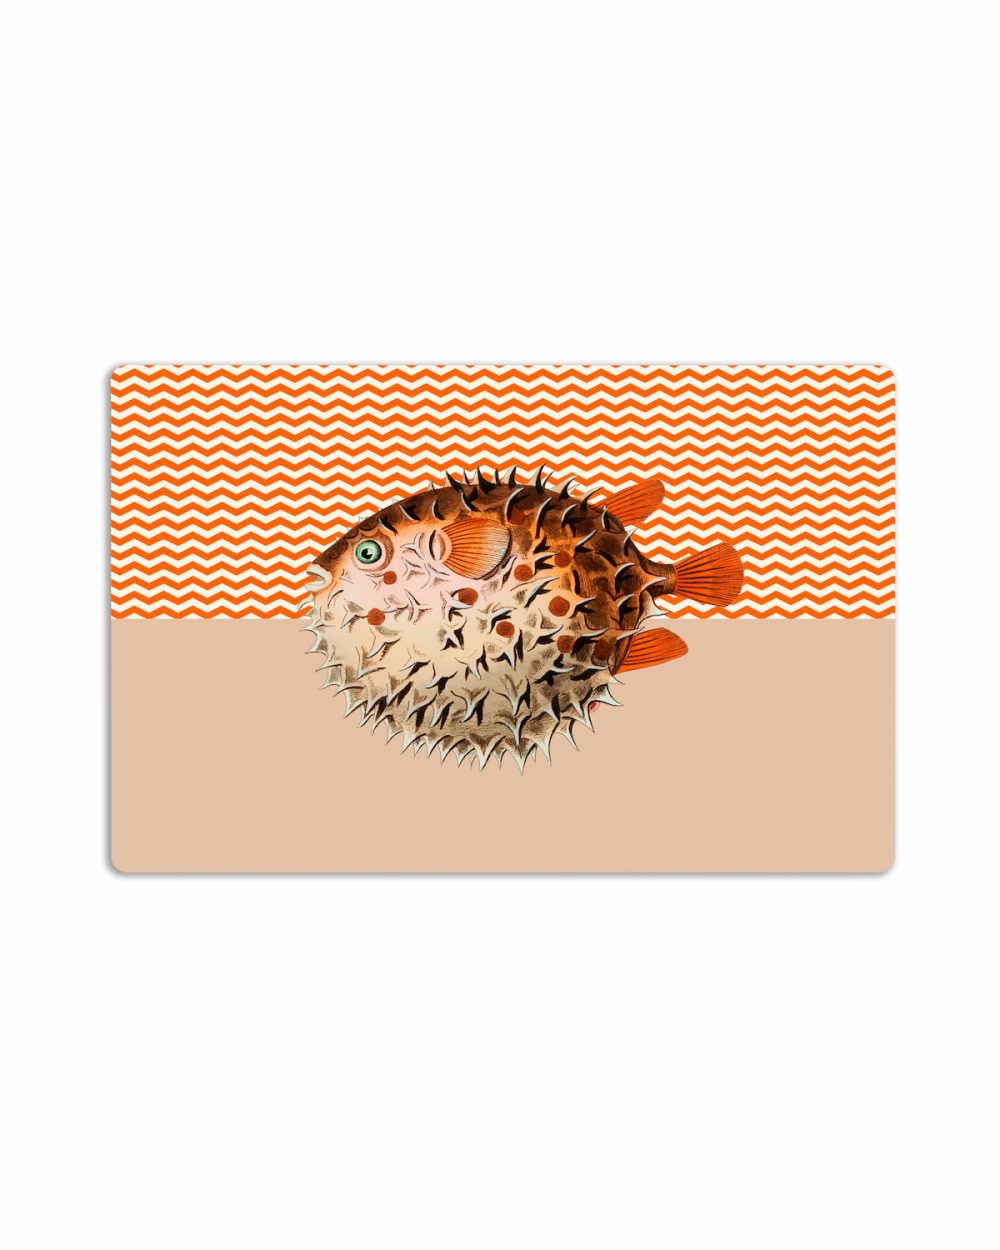 tovaglietta americana marea mare pesce palla grafica zig zag biancae arancione